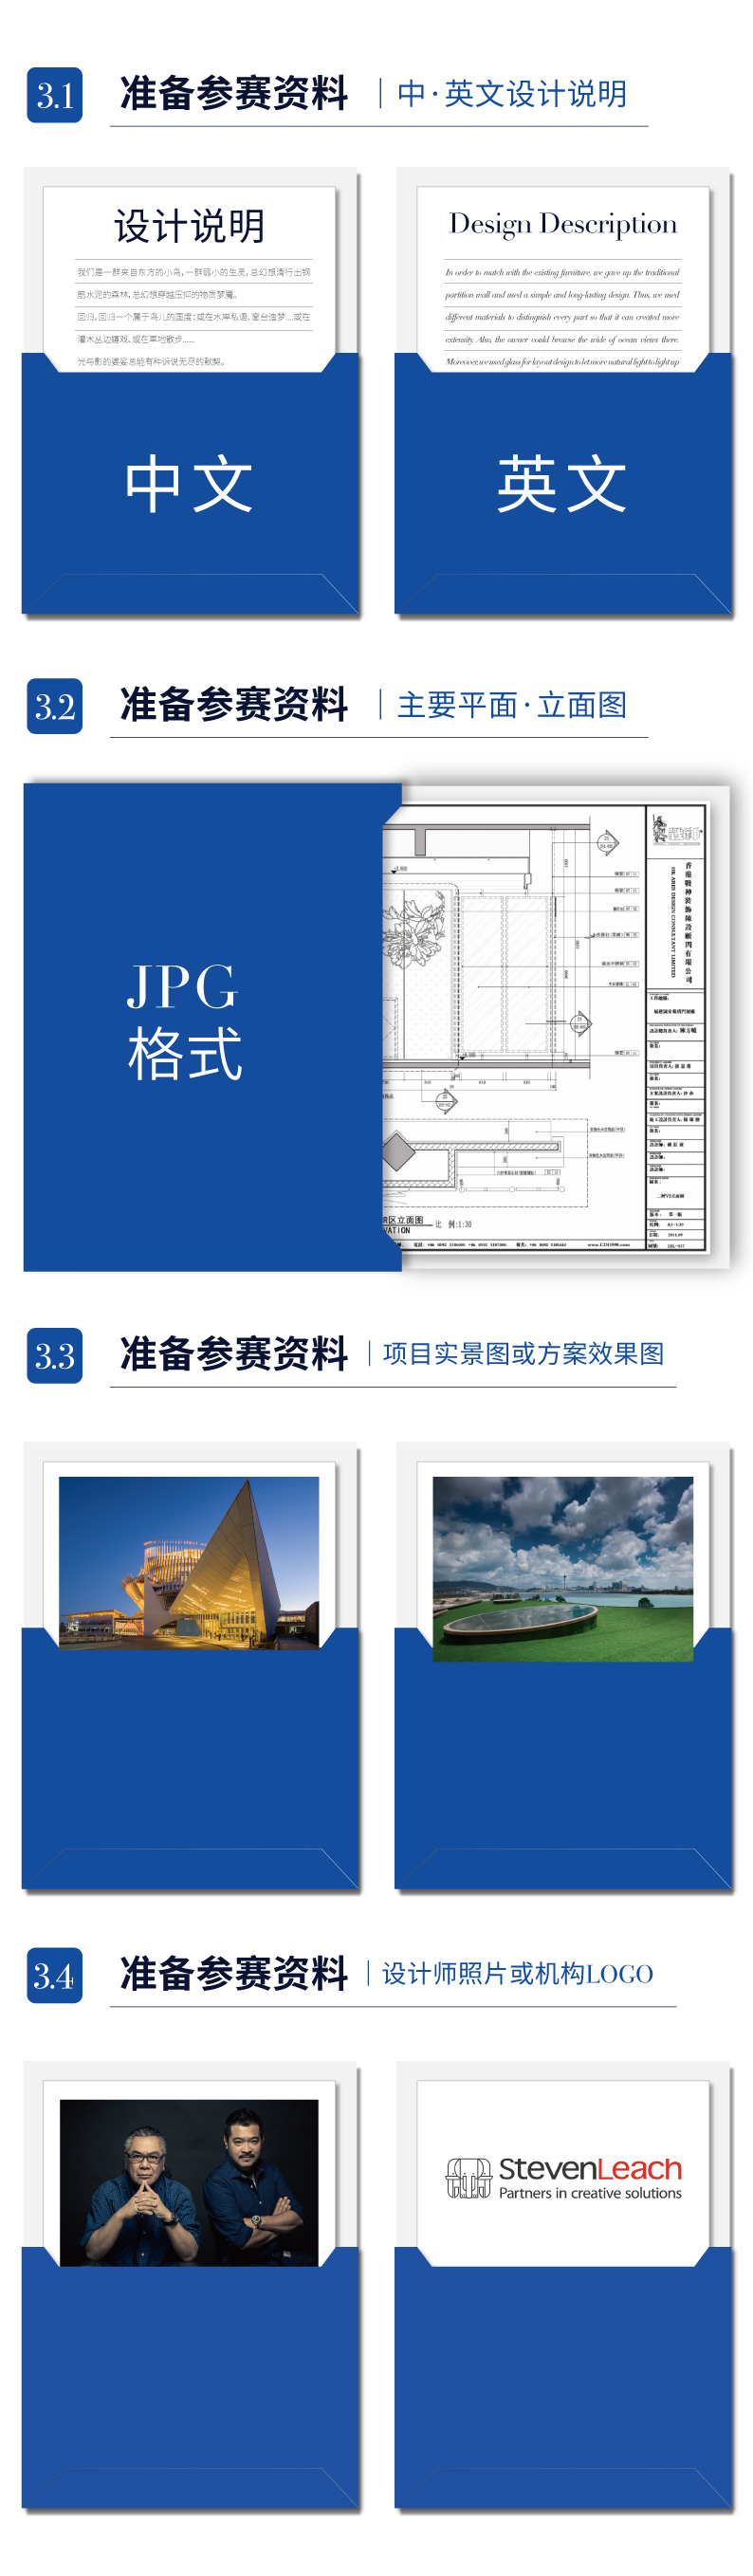 中文版-2022APDC AWARDS 赛事介绍_画板 1 副本 9.jpg